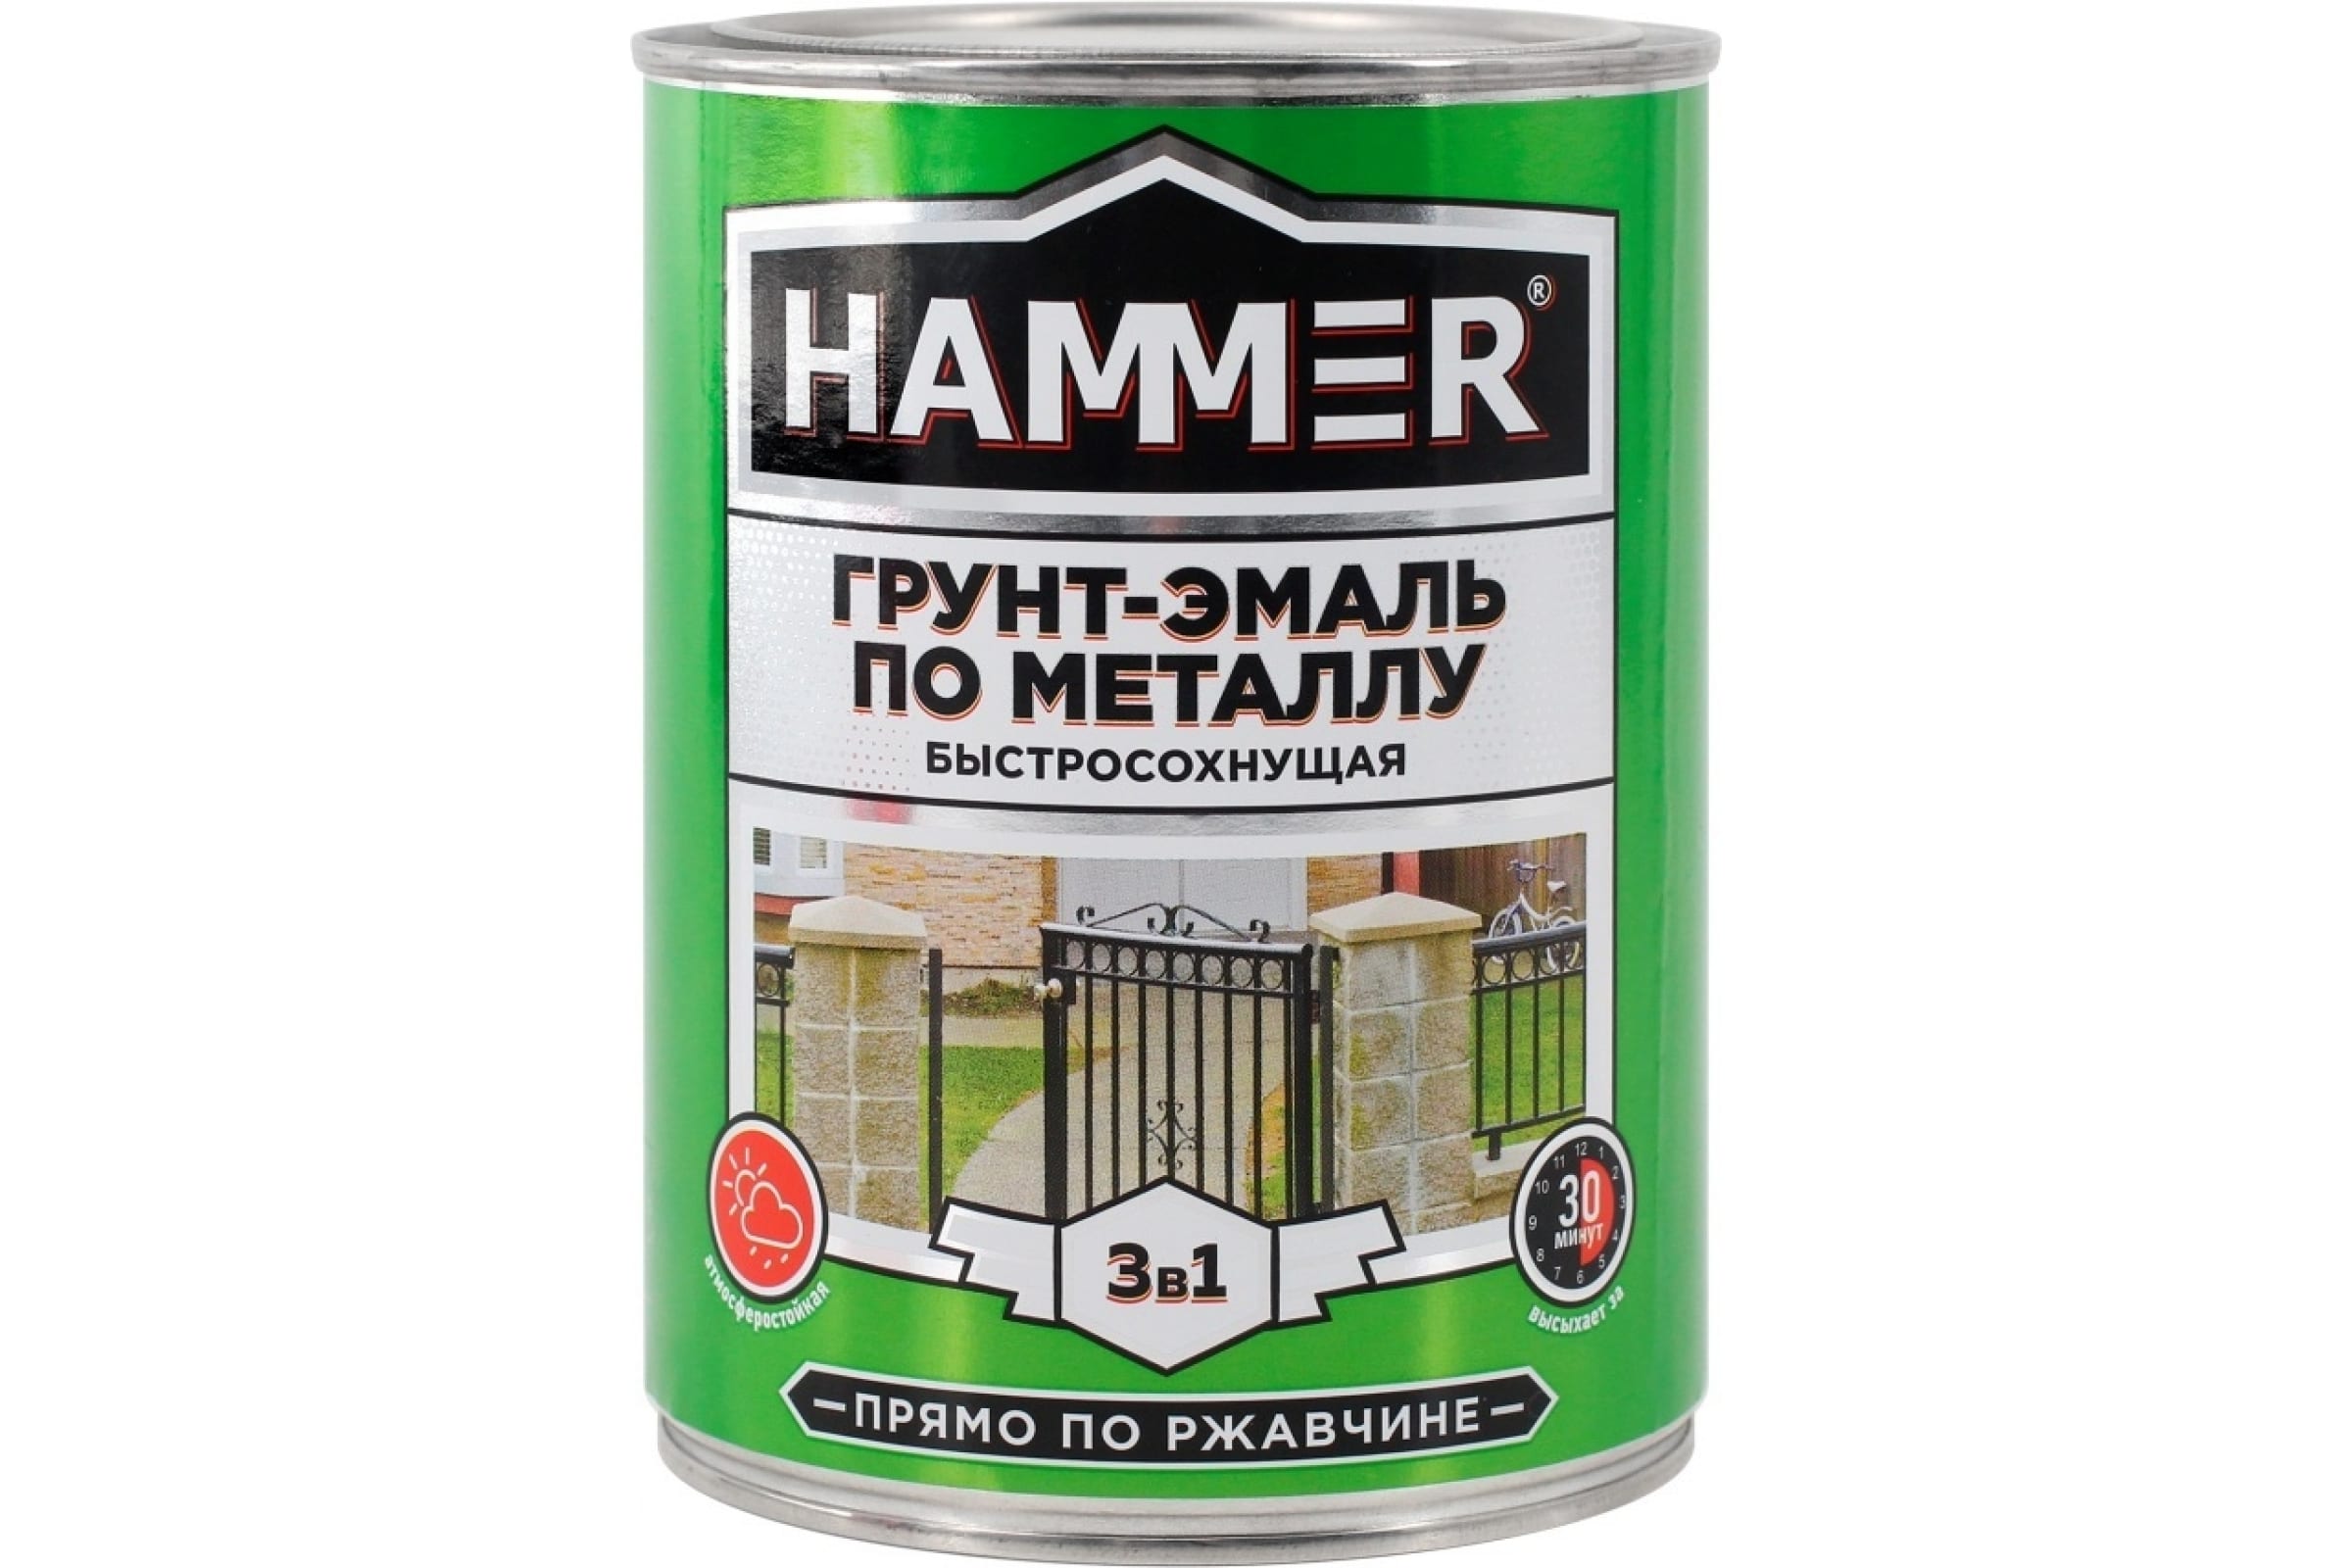 фото Hammer грунт-эмаль по металлу 3 в 1 б/с белая 0,9 кг / 6 эк000116559